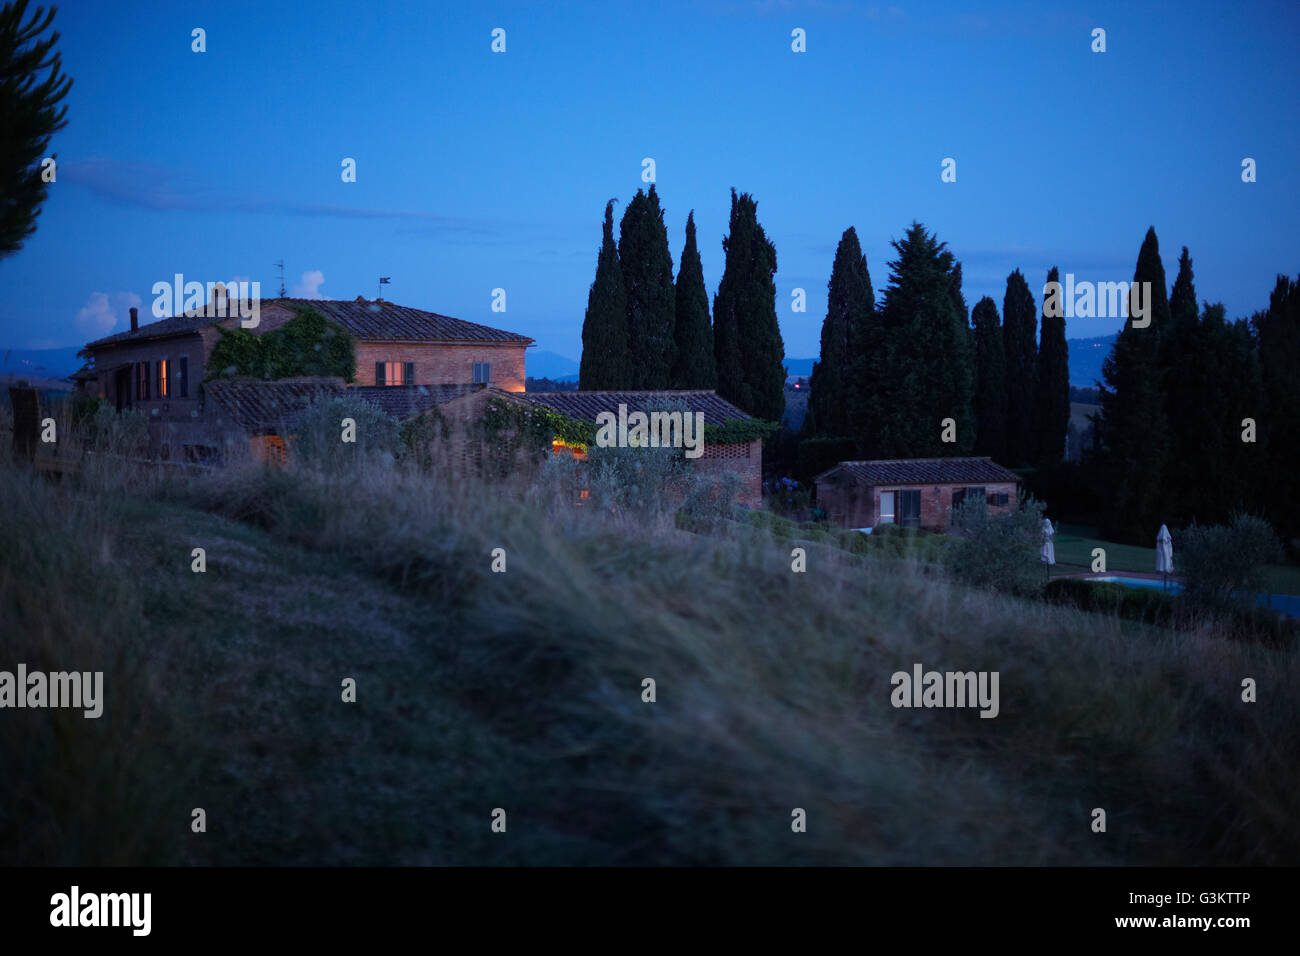 Row of houses on hillside, Buonconvento, Tuscany, Italy Stock Photo